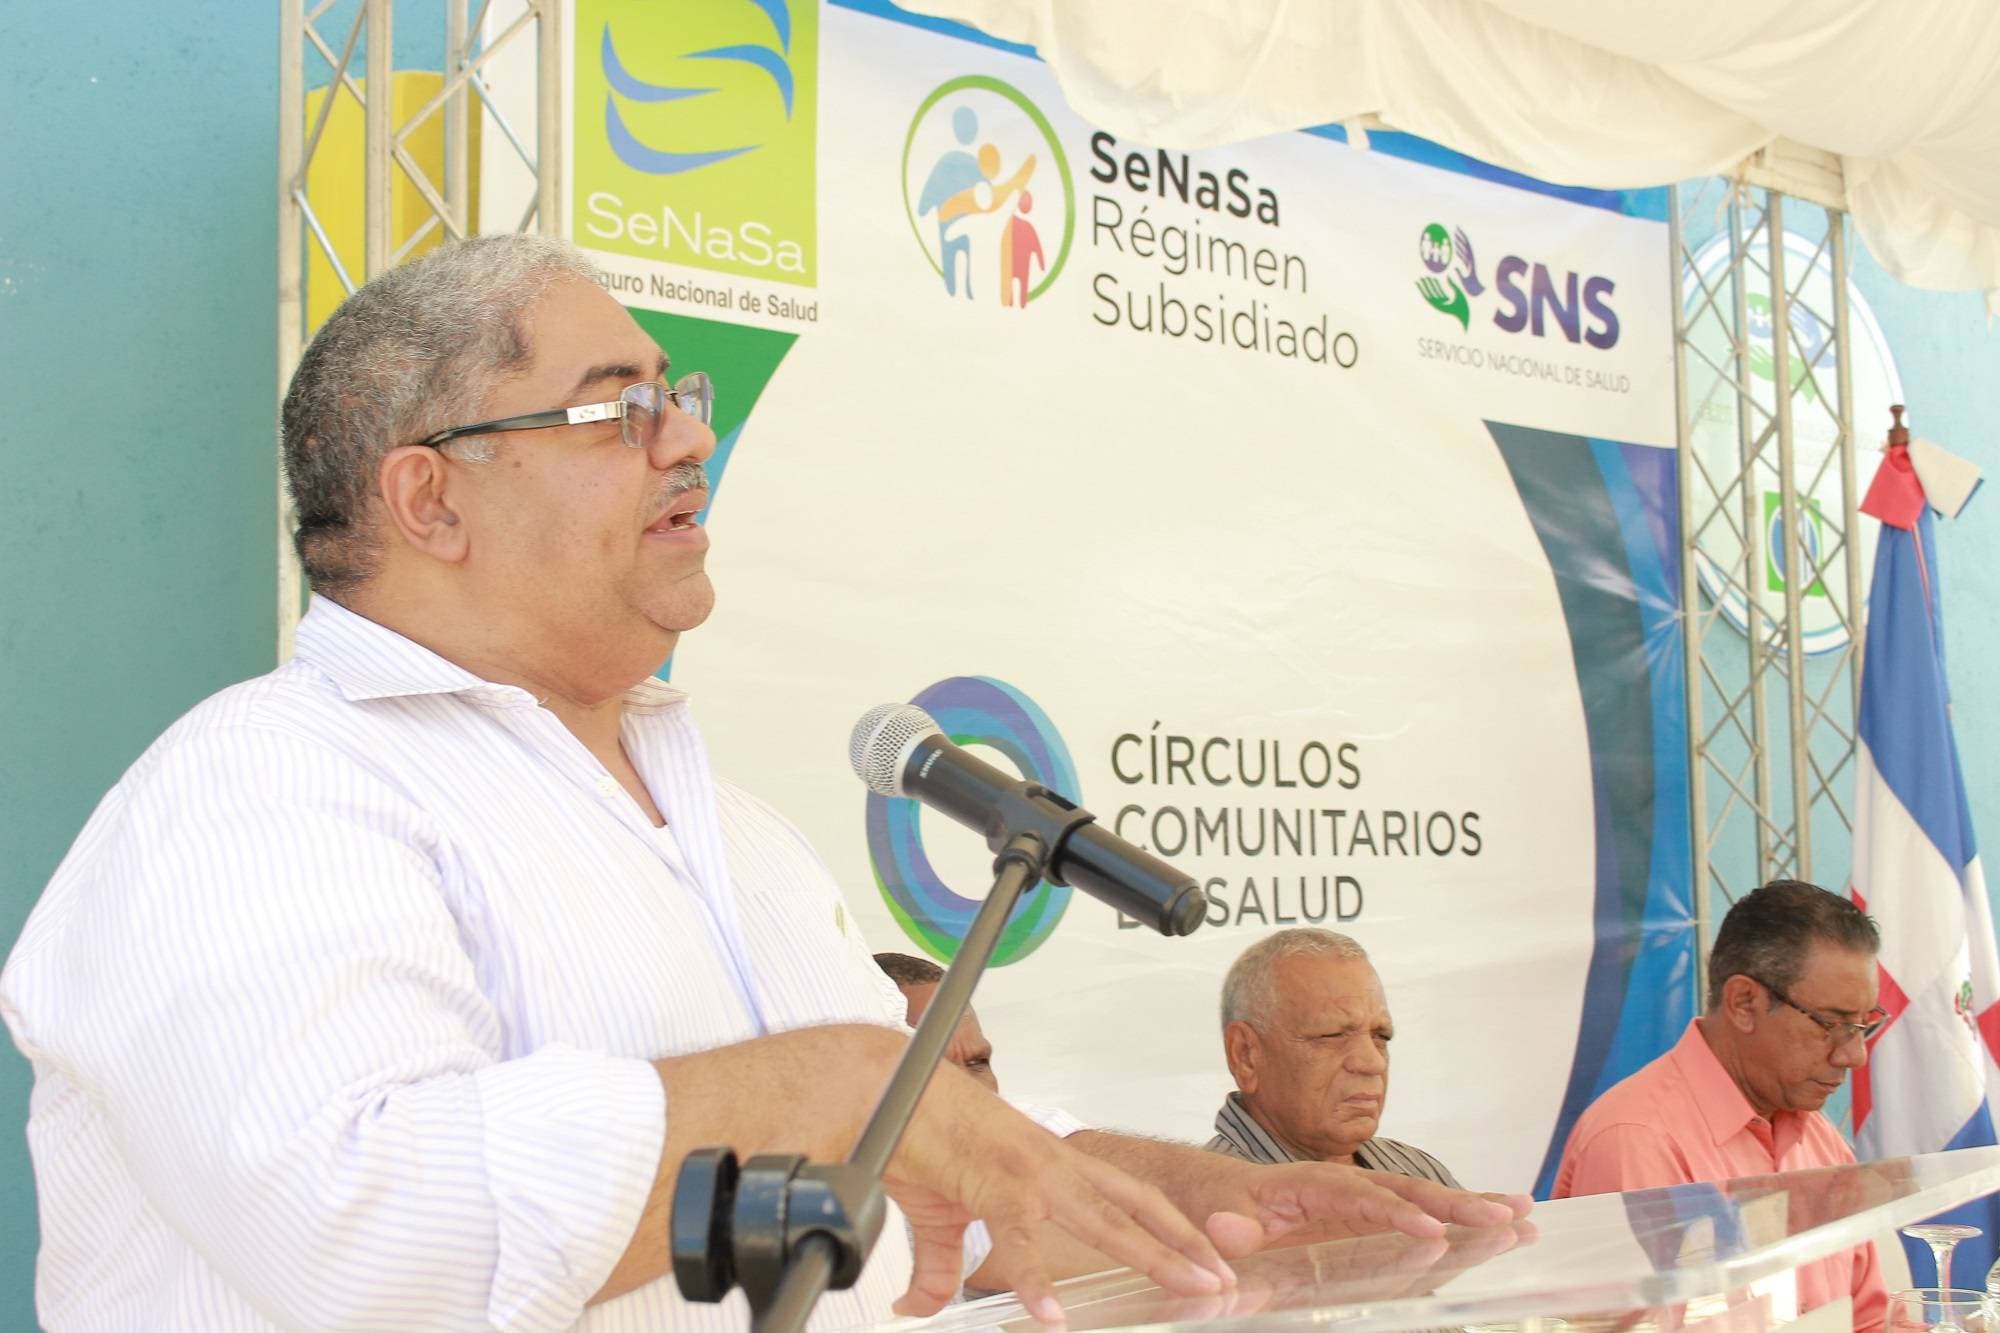 SeNaSa lanza estrategia nacional Círculos Comunitarios de Salud